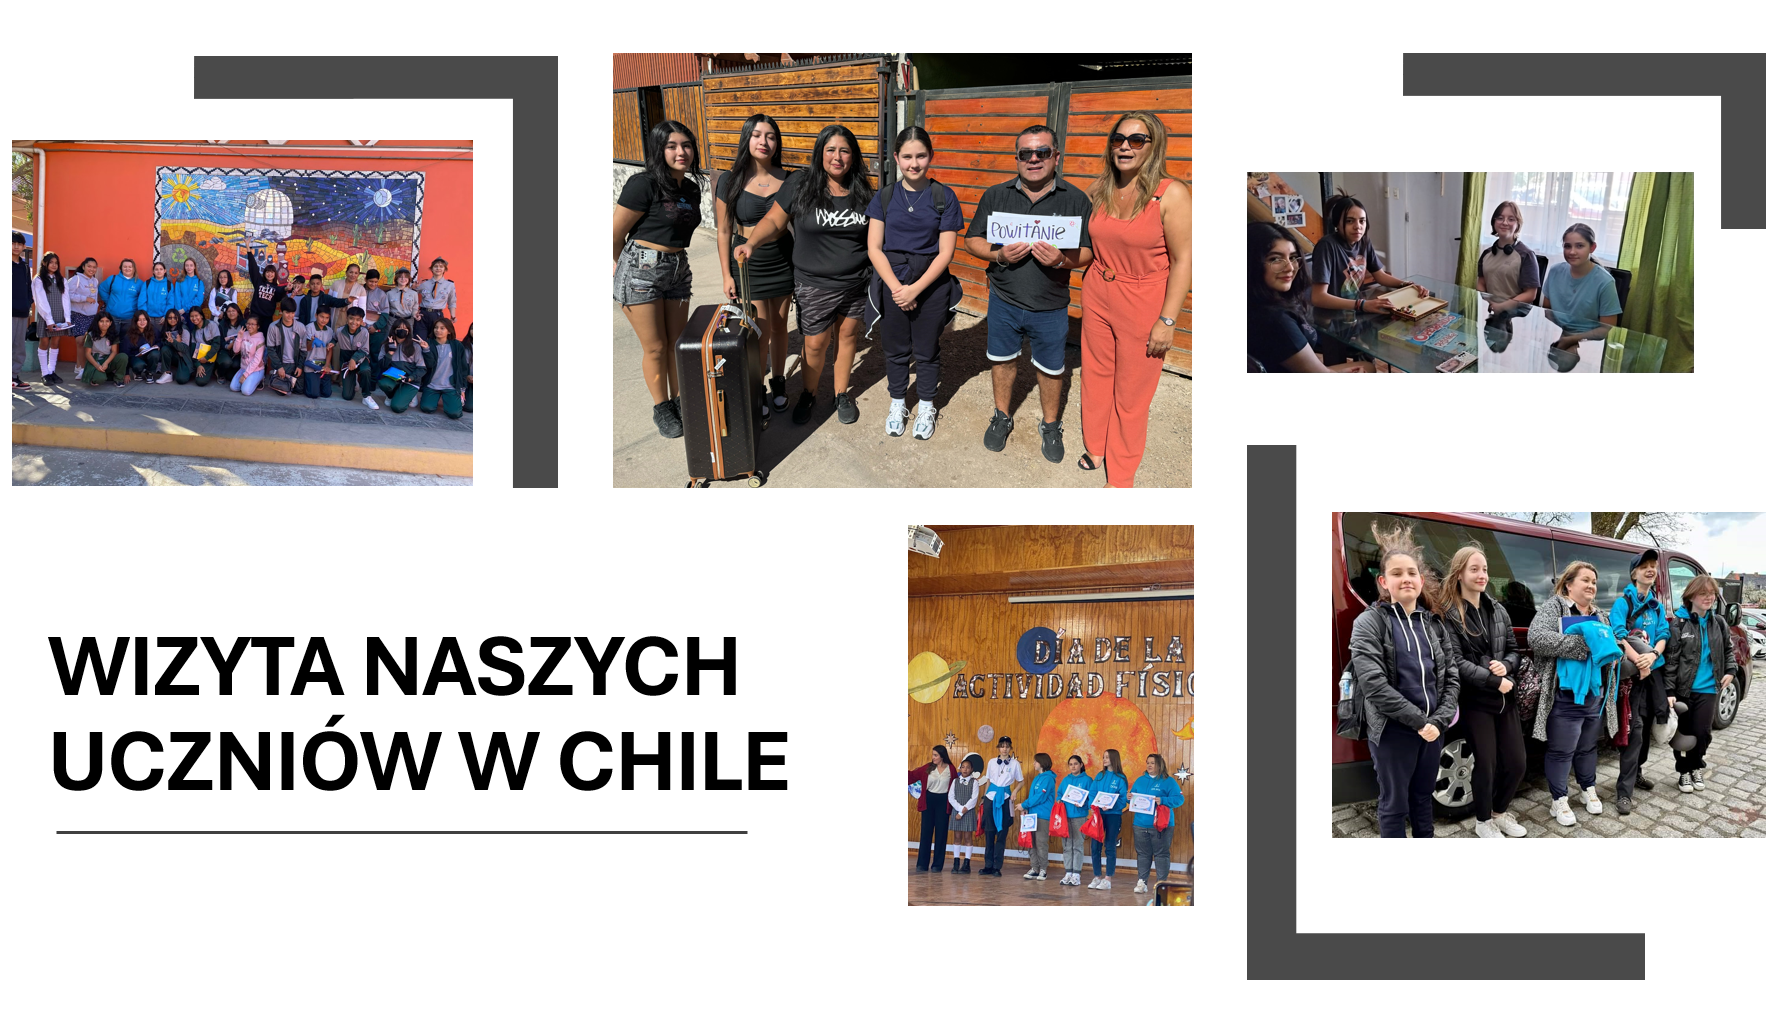 Wizyta w Chile